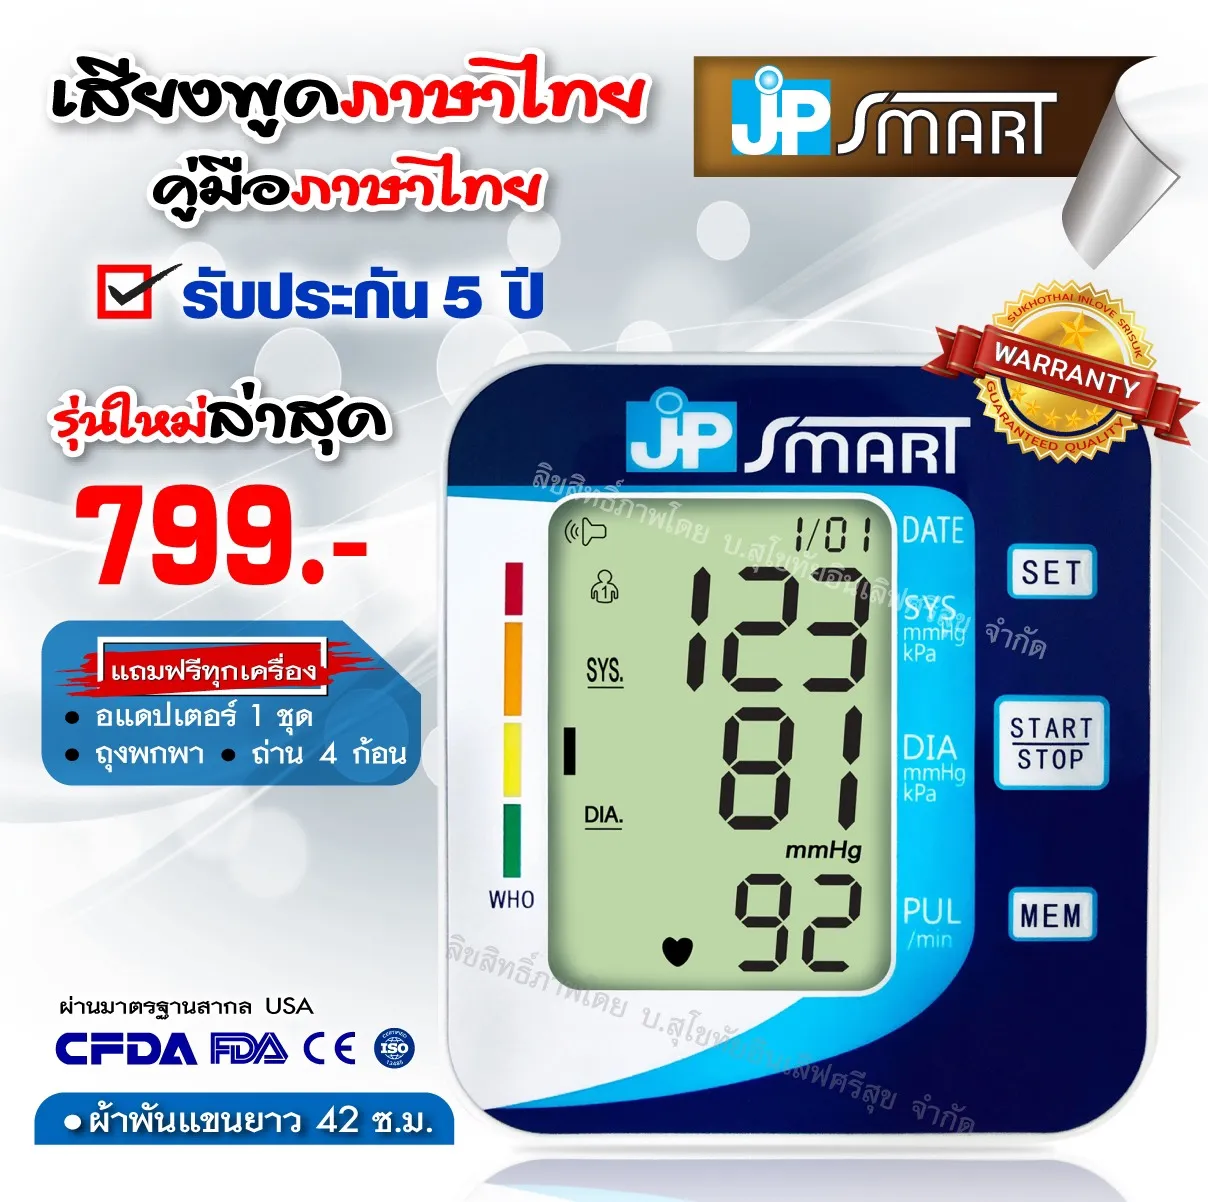 🔥ใหม่ล่าสุด🔥เครื่องวัดความดัน JP SMART เจพีสมาร์ท เครื่องวัดความดันภาษาไทย (Arm type full automatic blood pressure monitor)